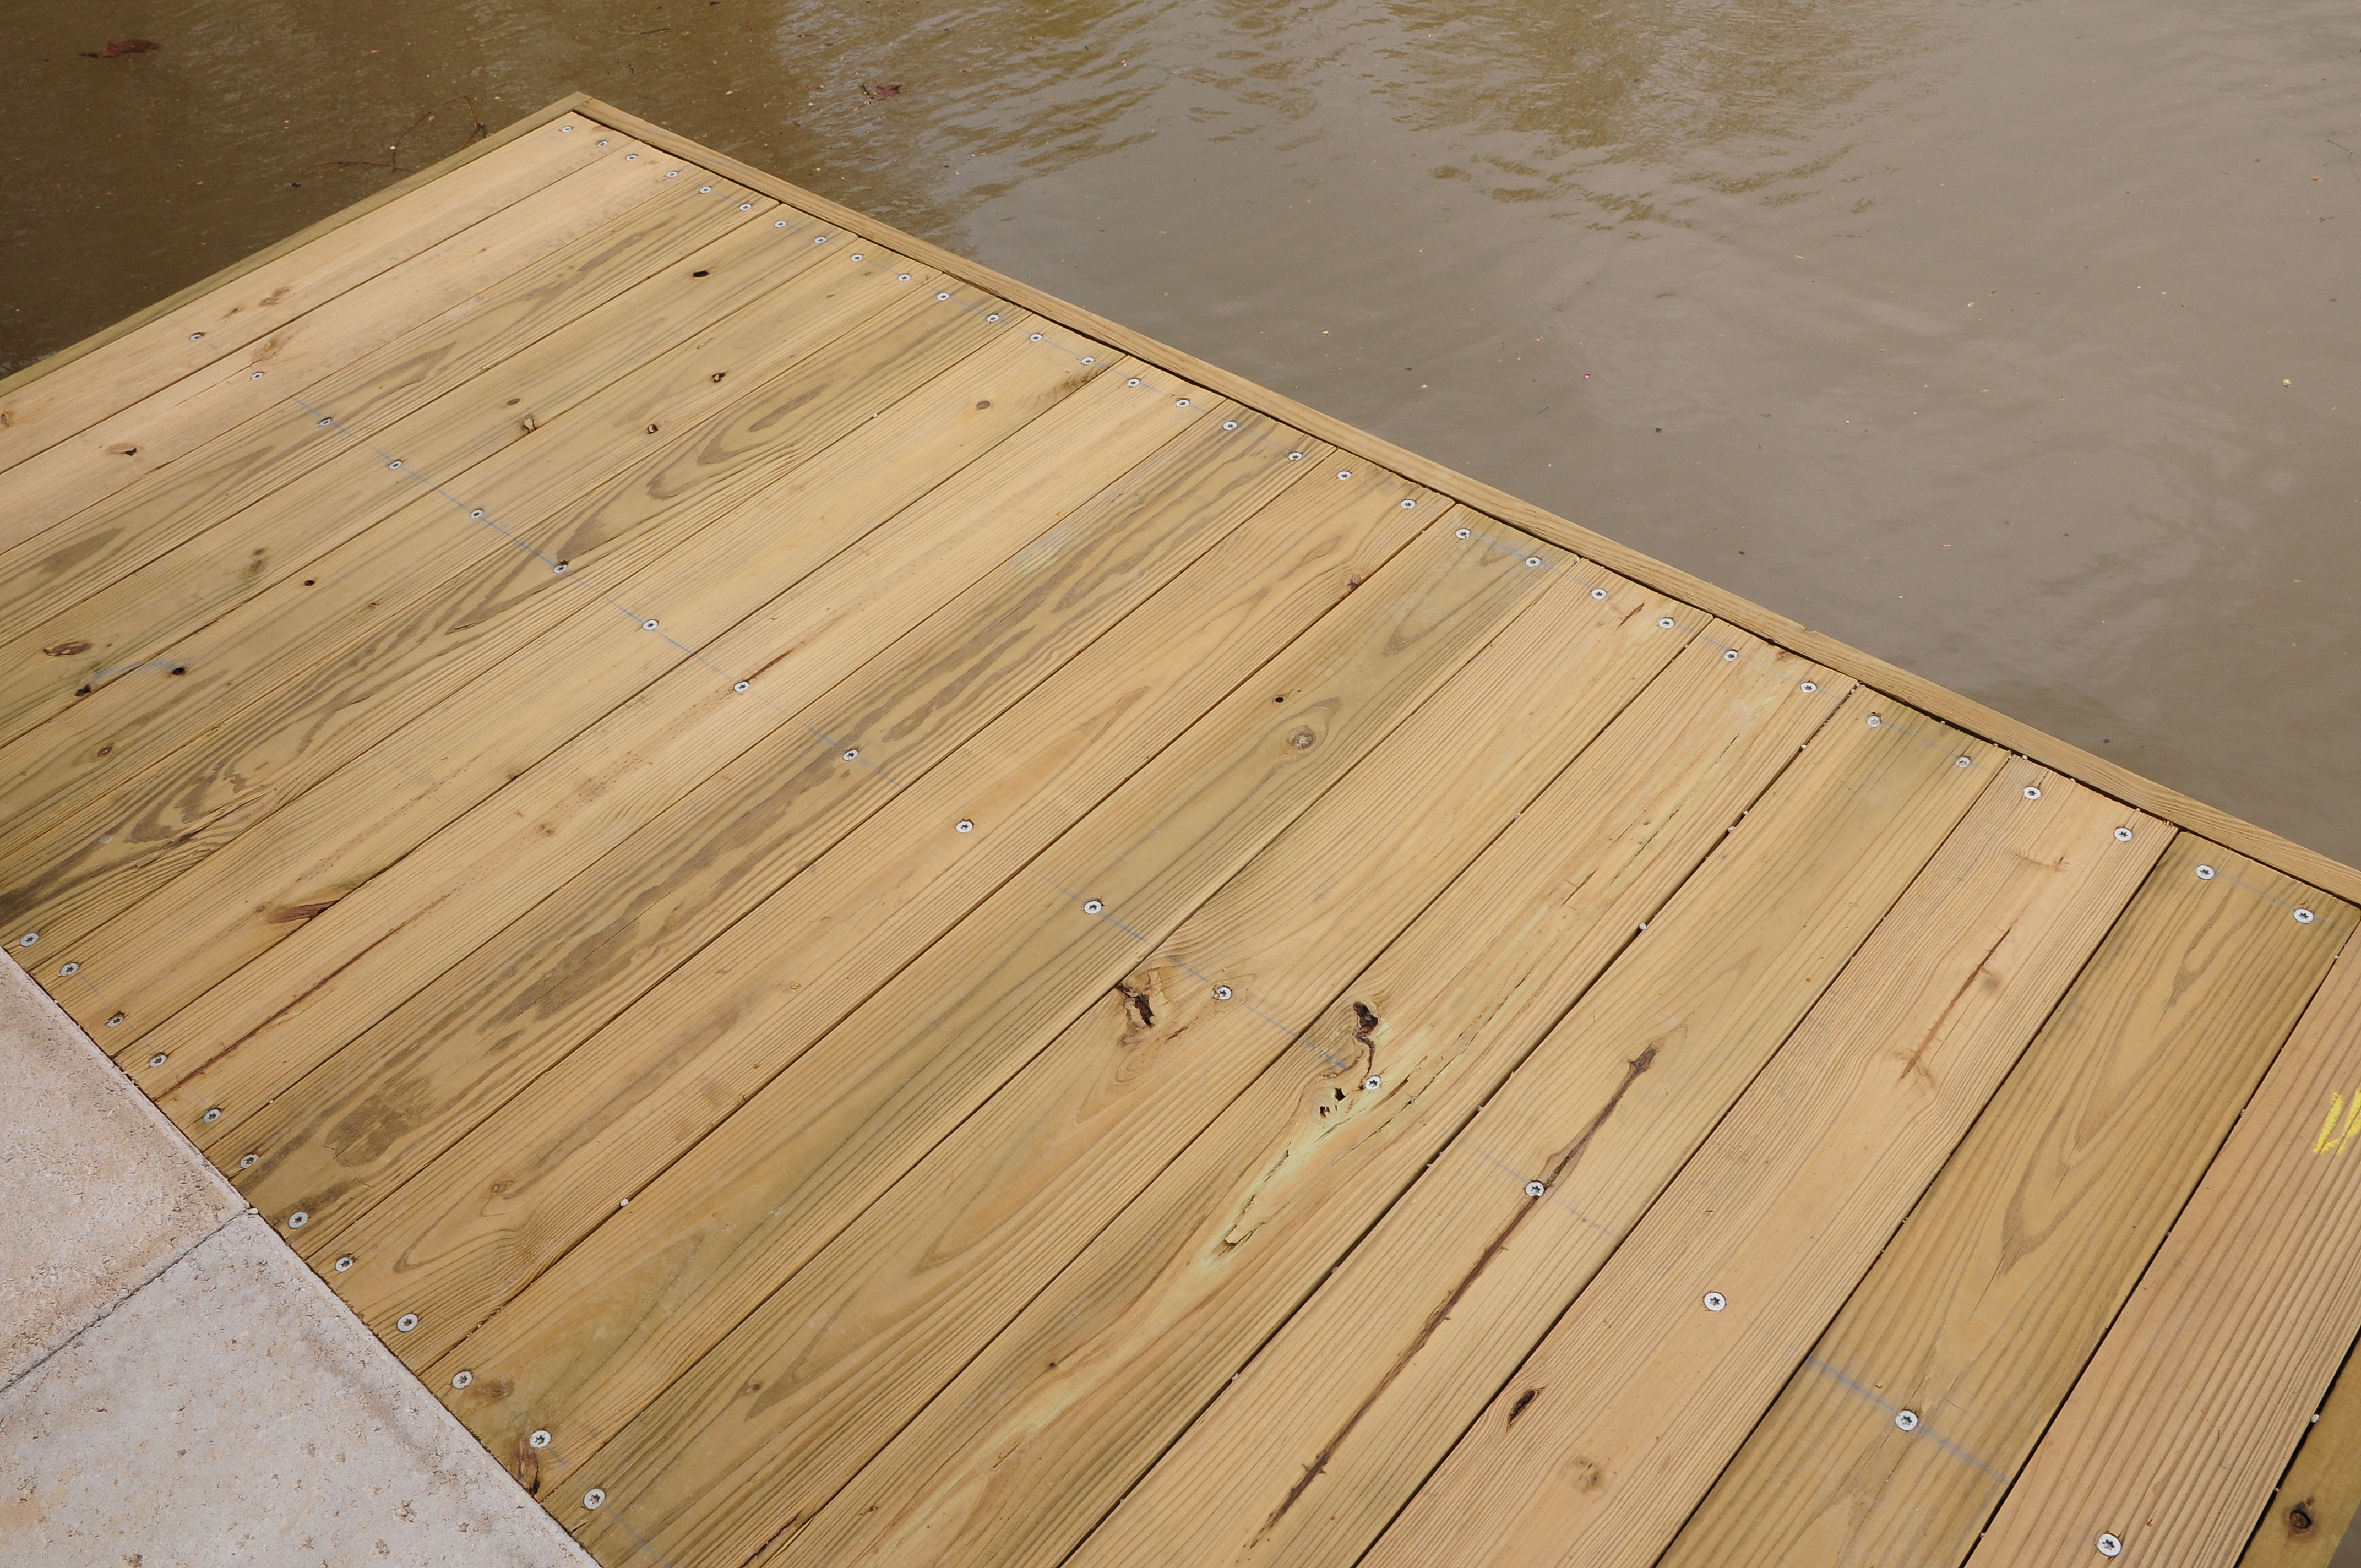 Kit Dock Treated Lumber Decking Shed Platform